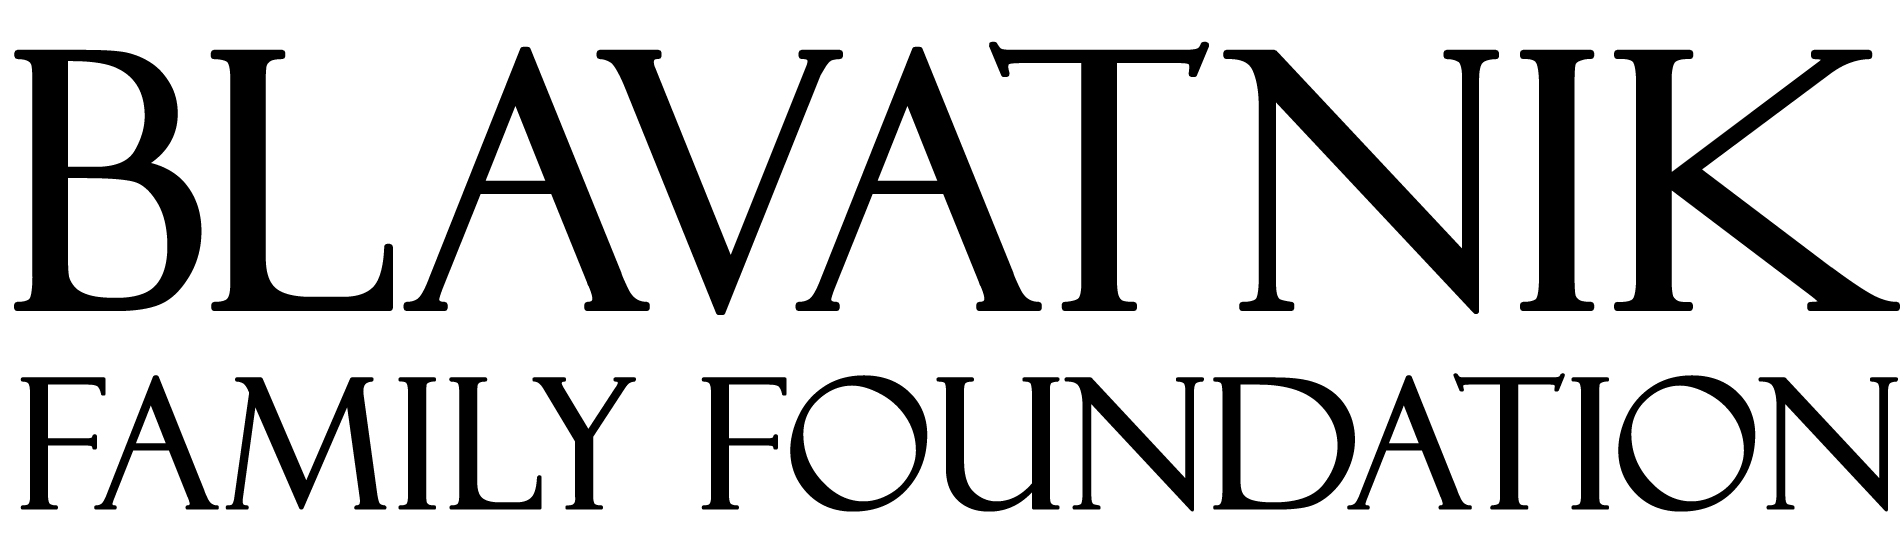 Blavatnik Family Foundation Logo